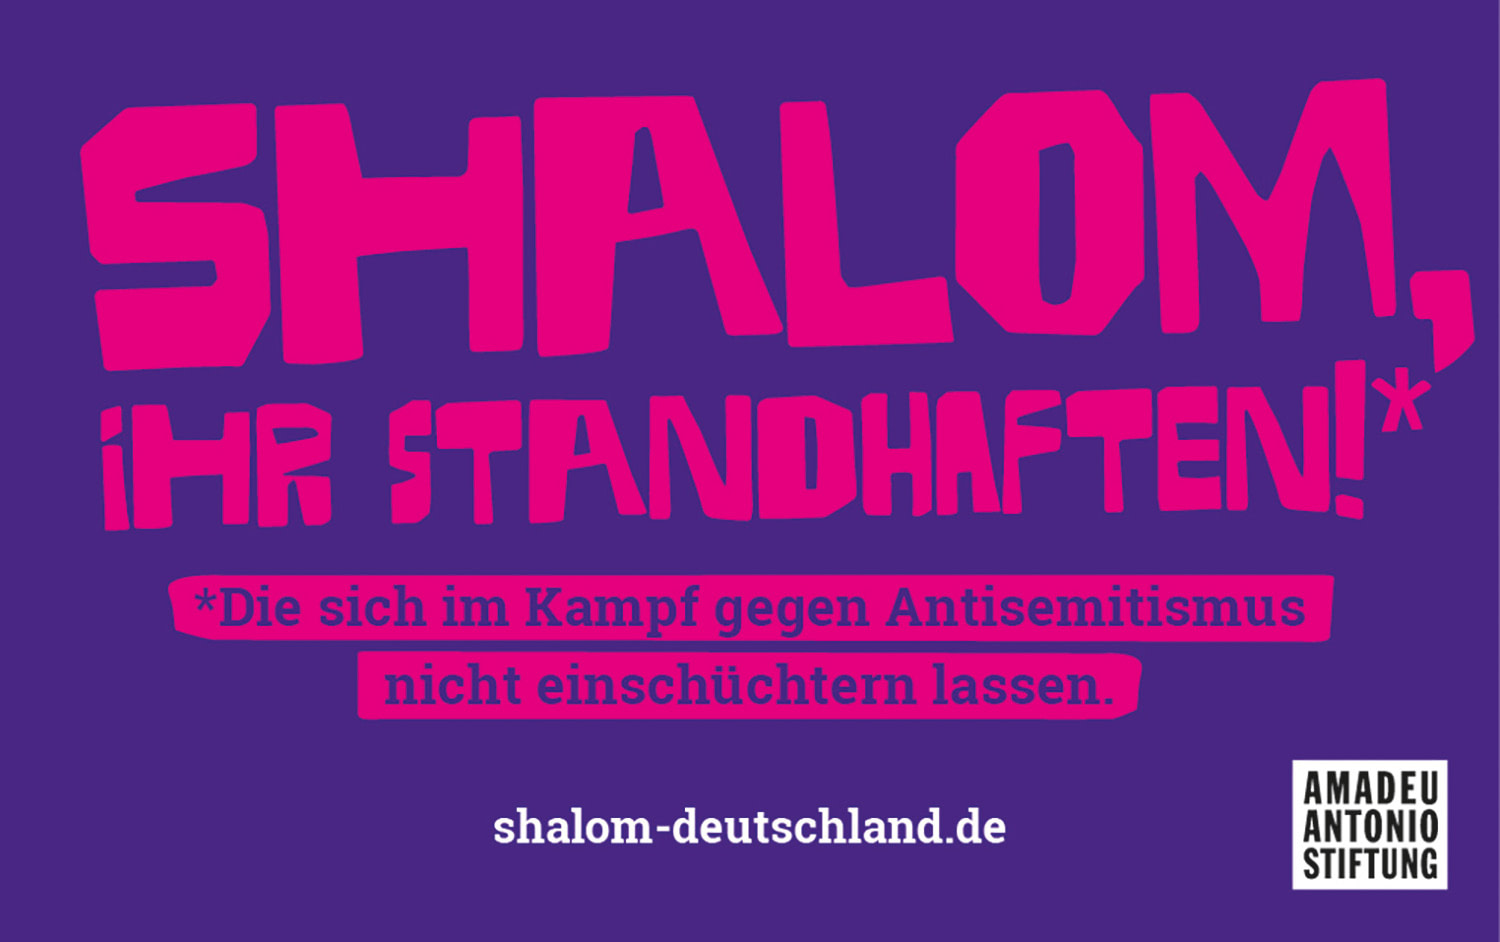 Grafik mit lilafarbenen Hintergrund, darauf der Text in pink: `Slalom, ihr Standhaften!*` darunter steht: `*Die sich im Kampf gegen Antisemitismus nicht einschüchtern lassen.` + URL: `shalom-deutschland.de` und das Amadeu Antonio Stiftungs-Logo